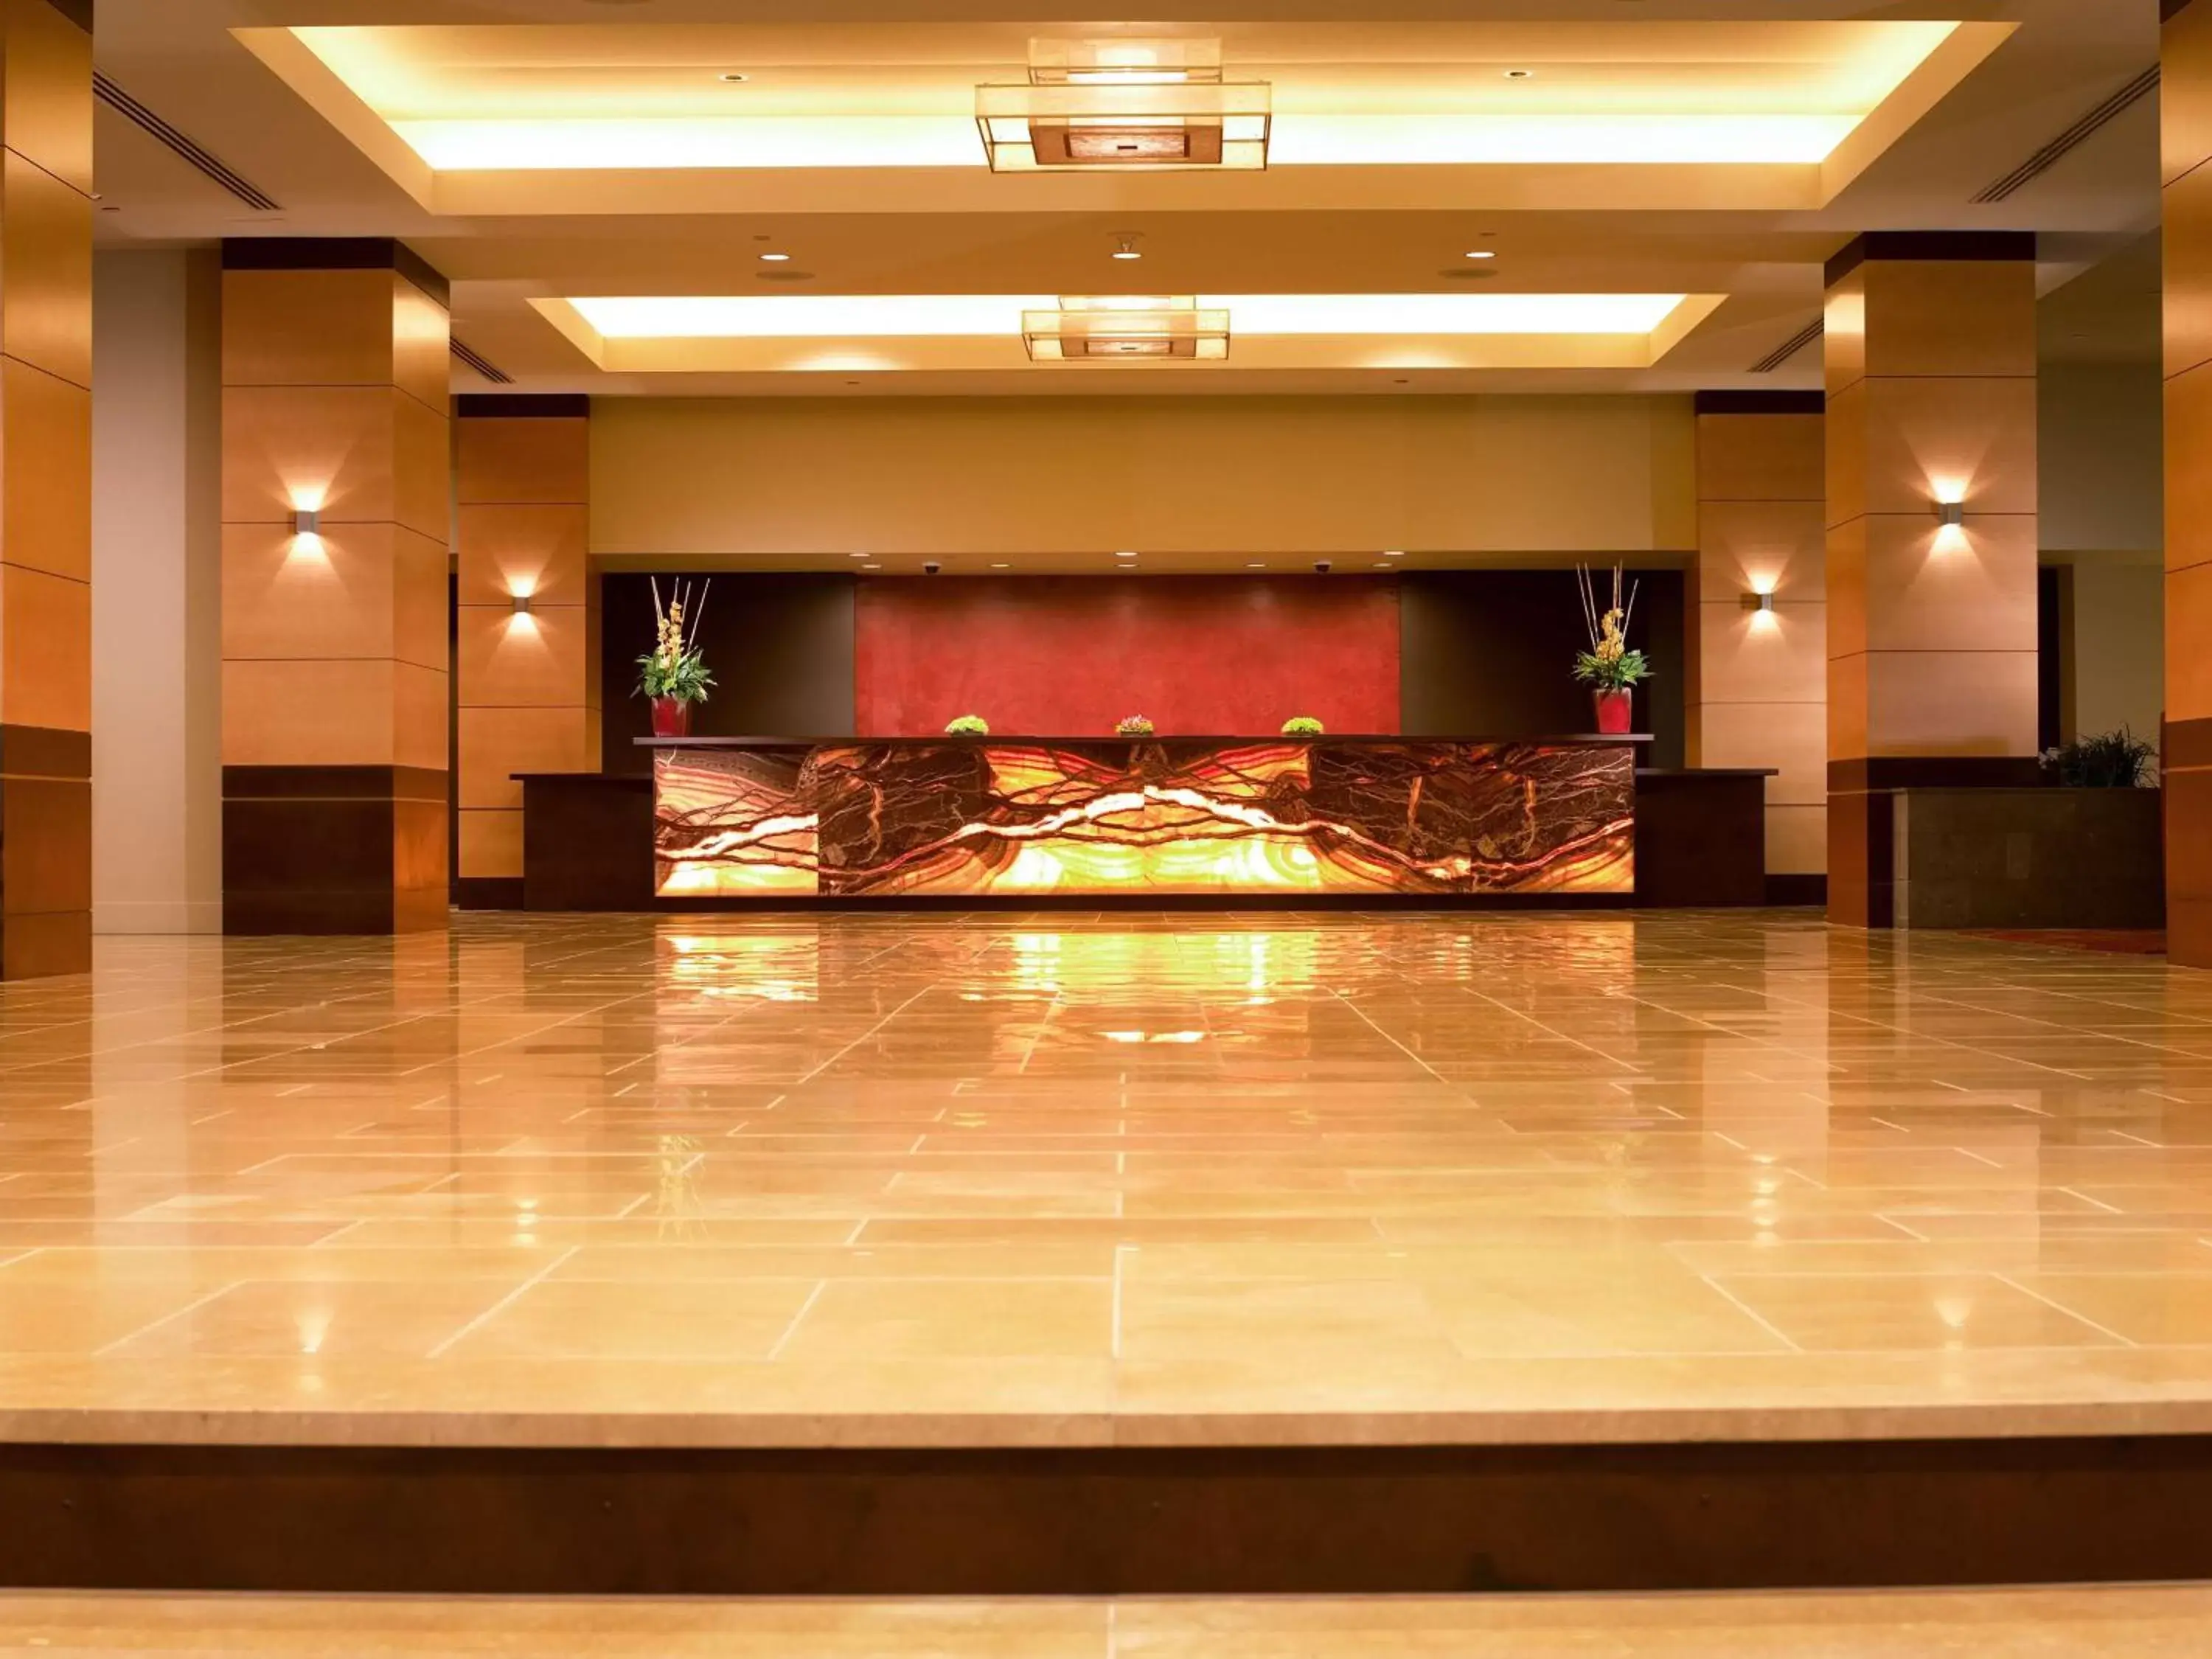 Lobby or reception in Hyatt Regency Bellevue